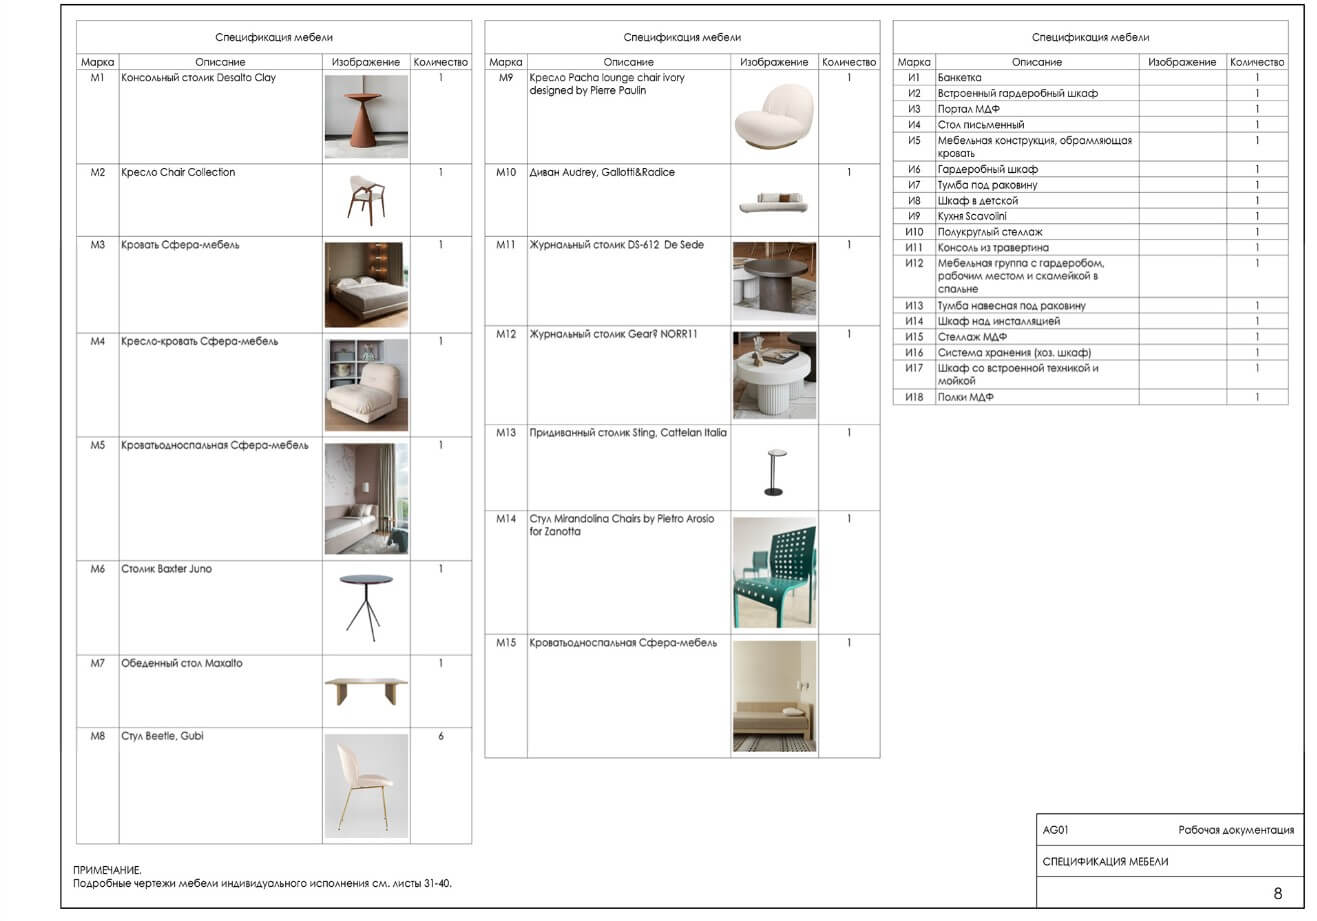 Спецификация мебели для проекта